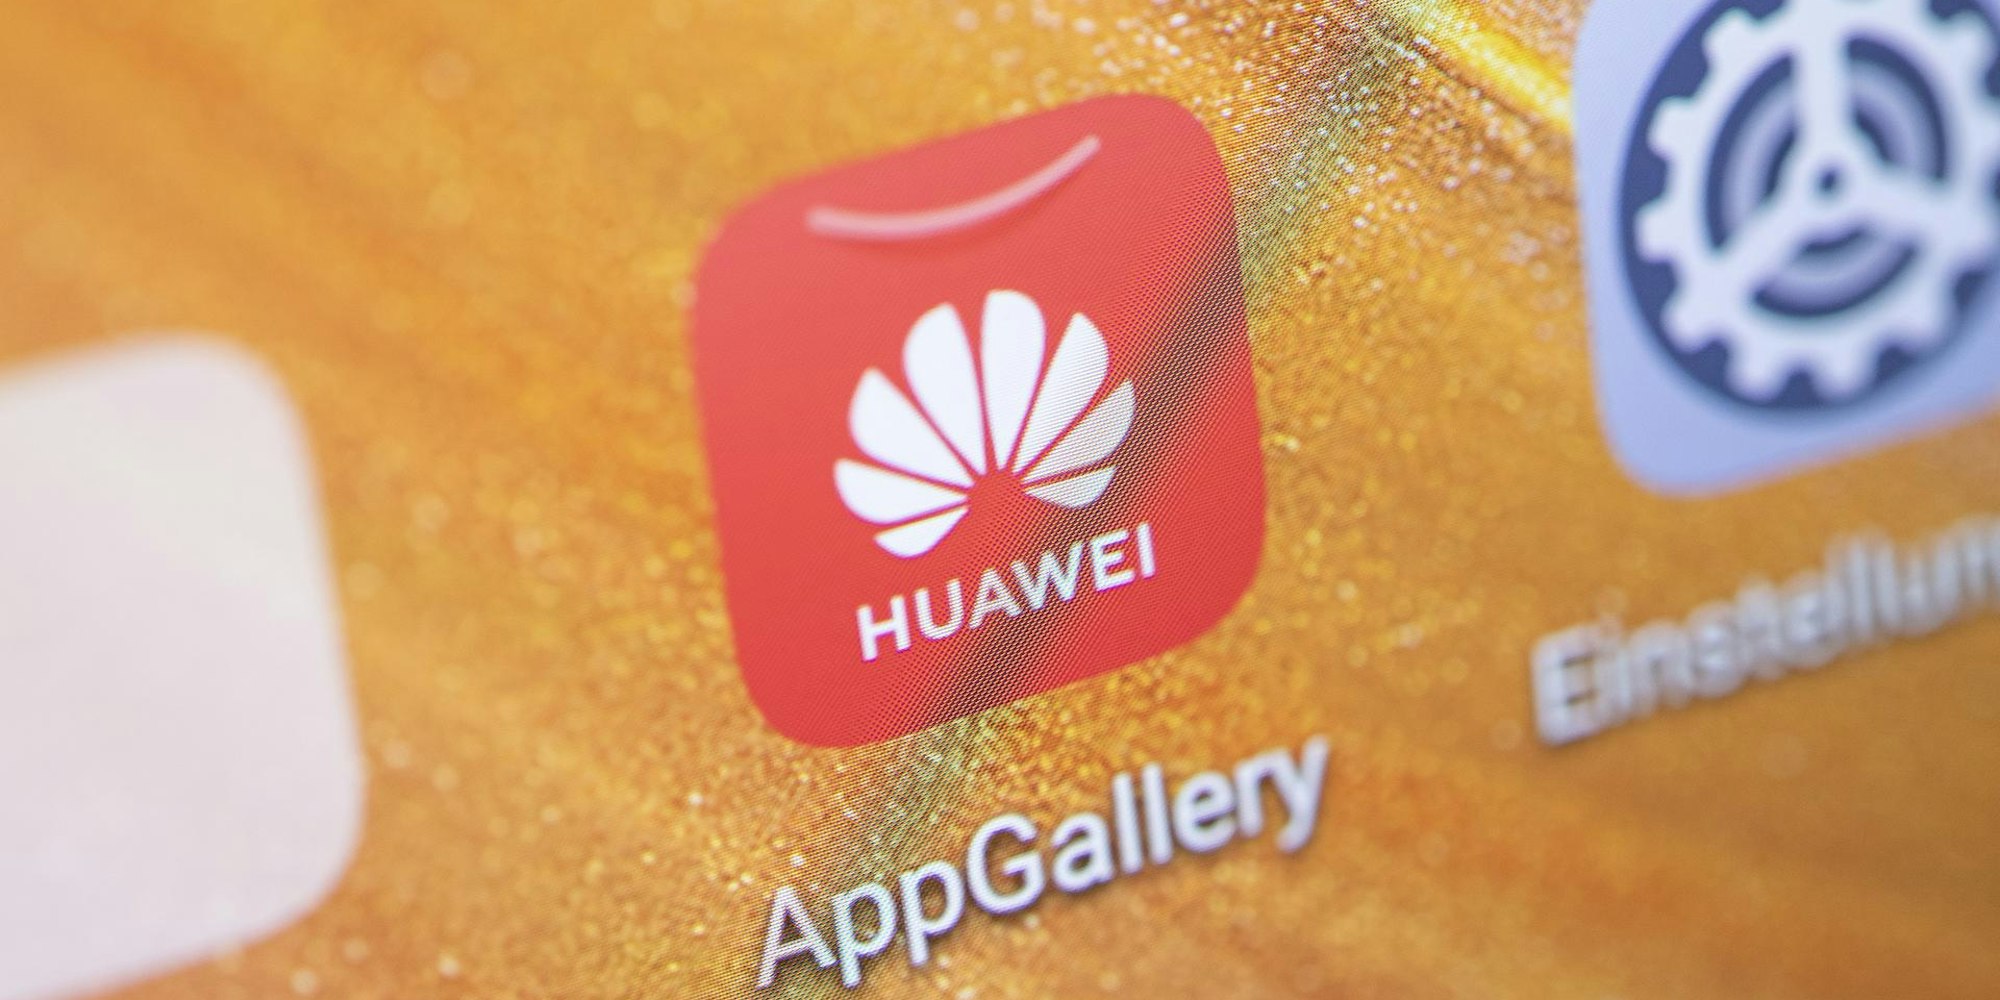 Huawei Display App